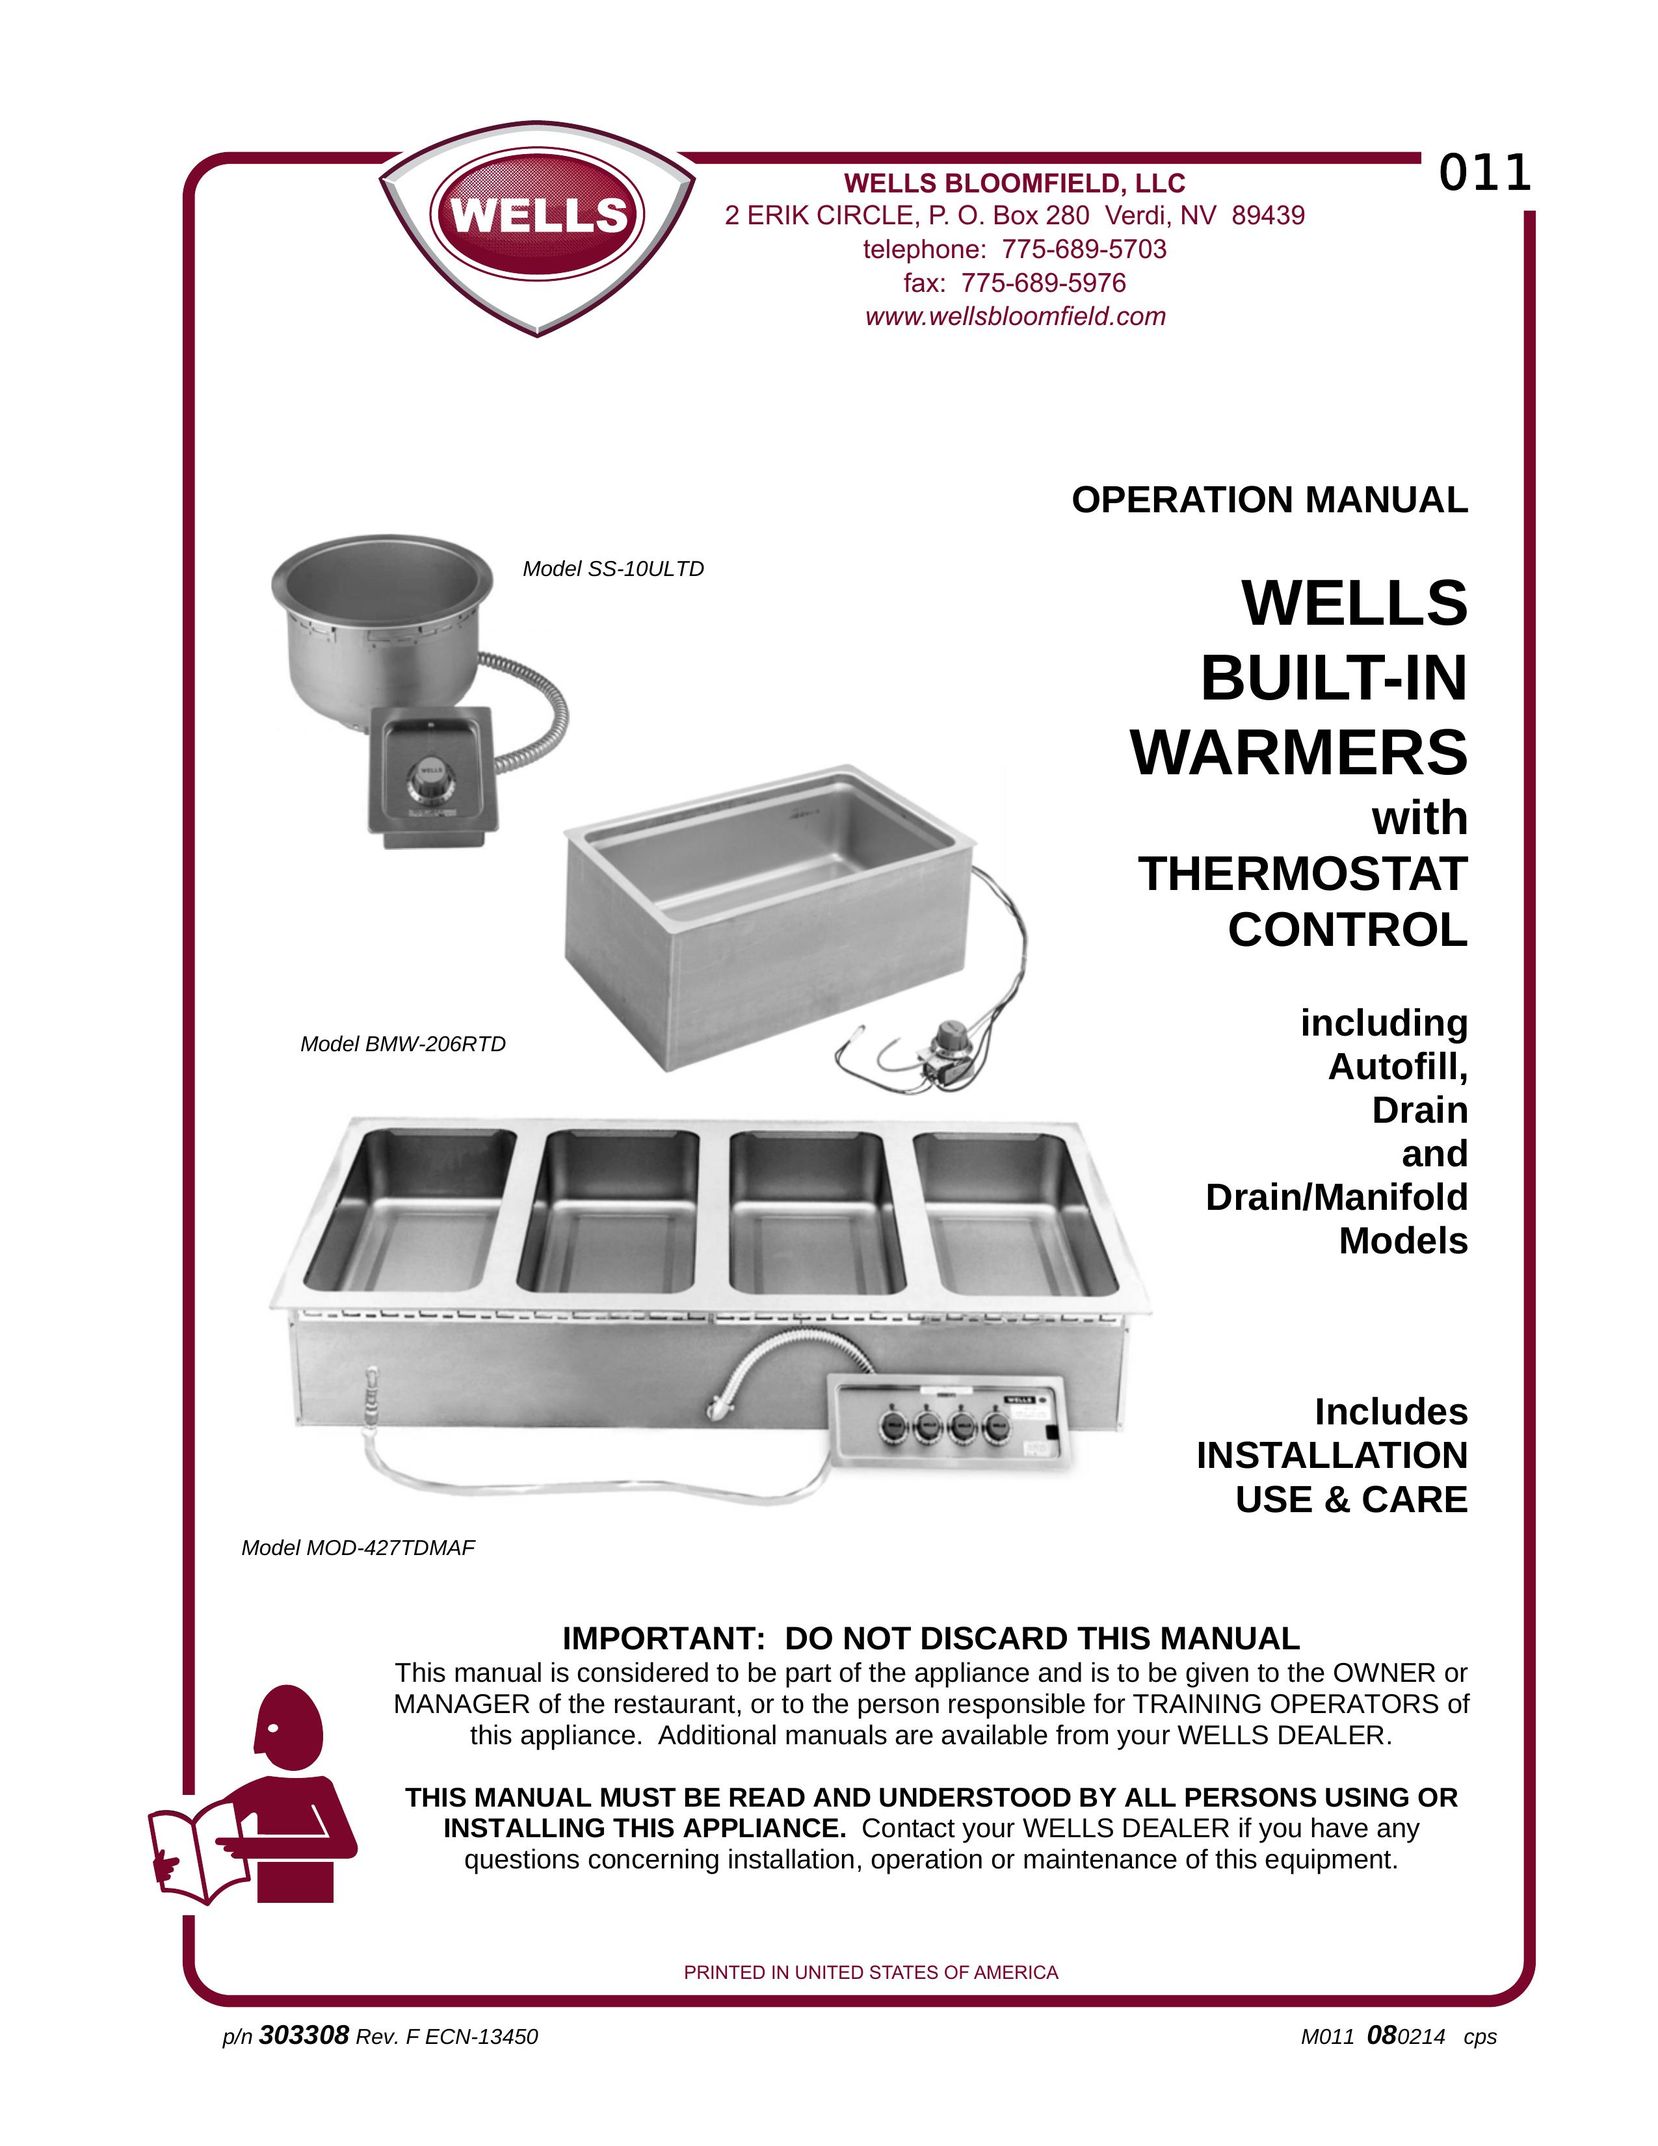 Wells MOD-427TDMAF Food Warmer User Manual